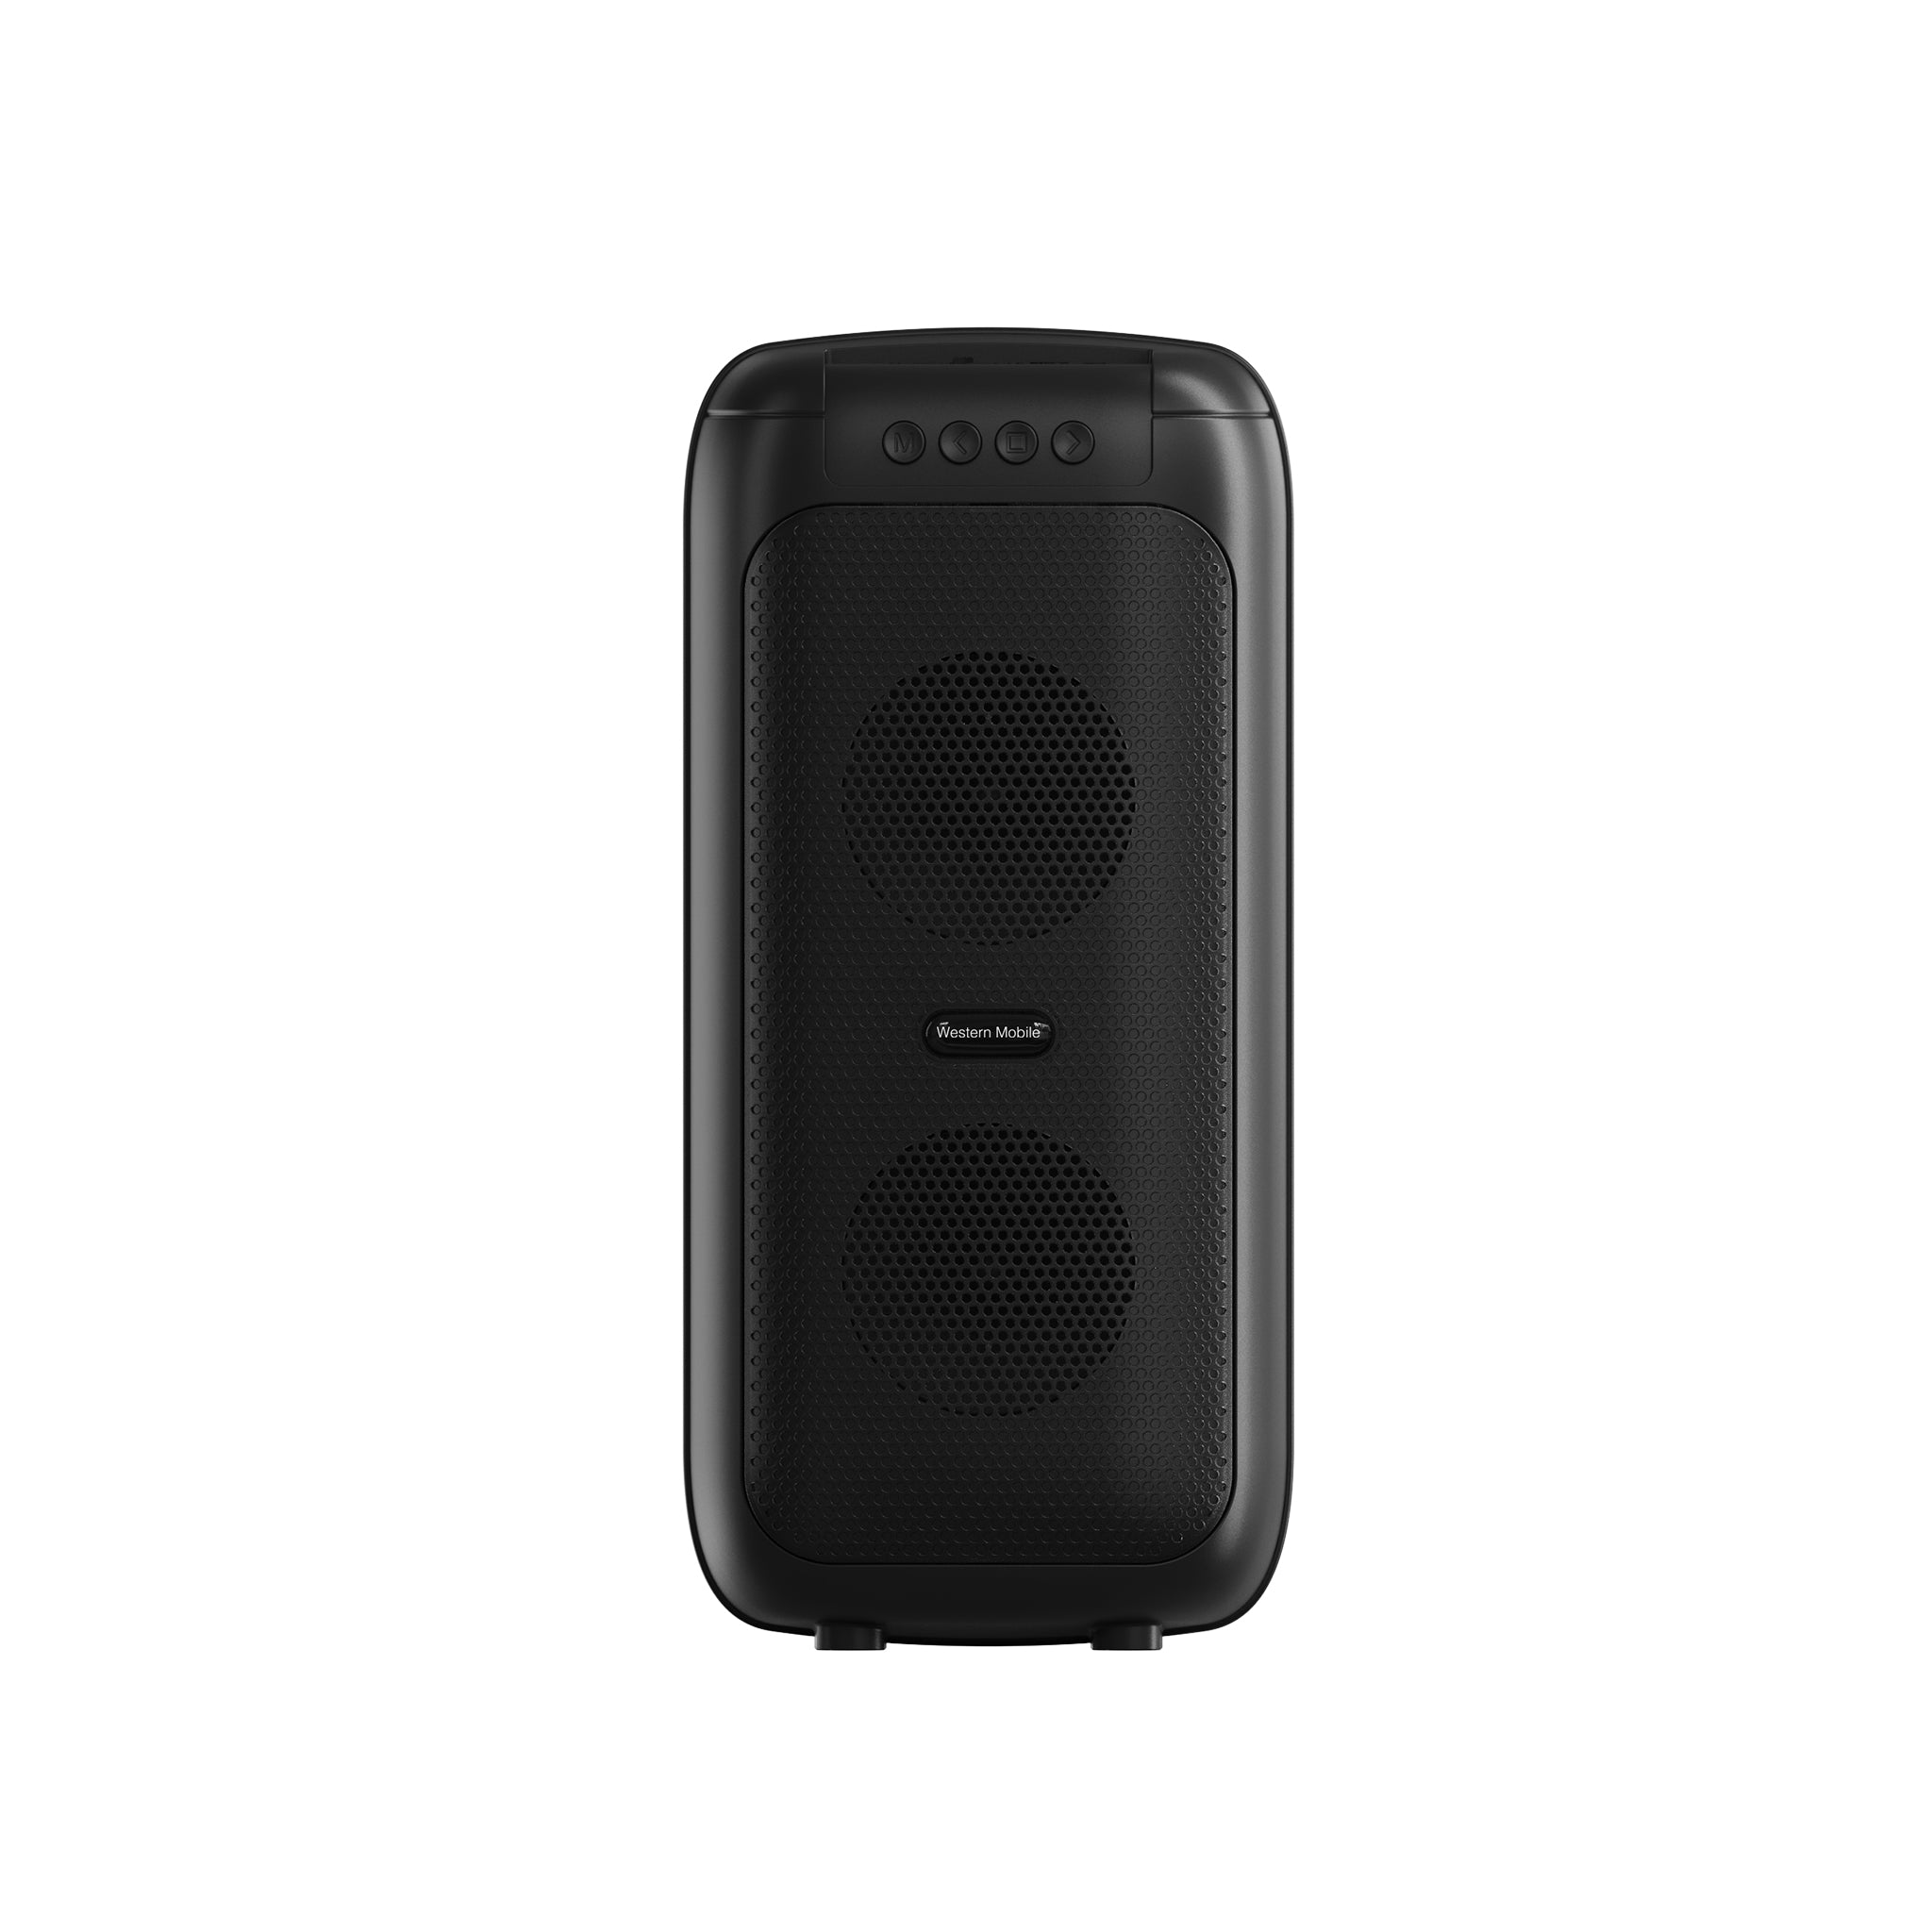 Haut-parleur sans fil portable Western Mobile Urban SP300